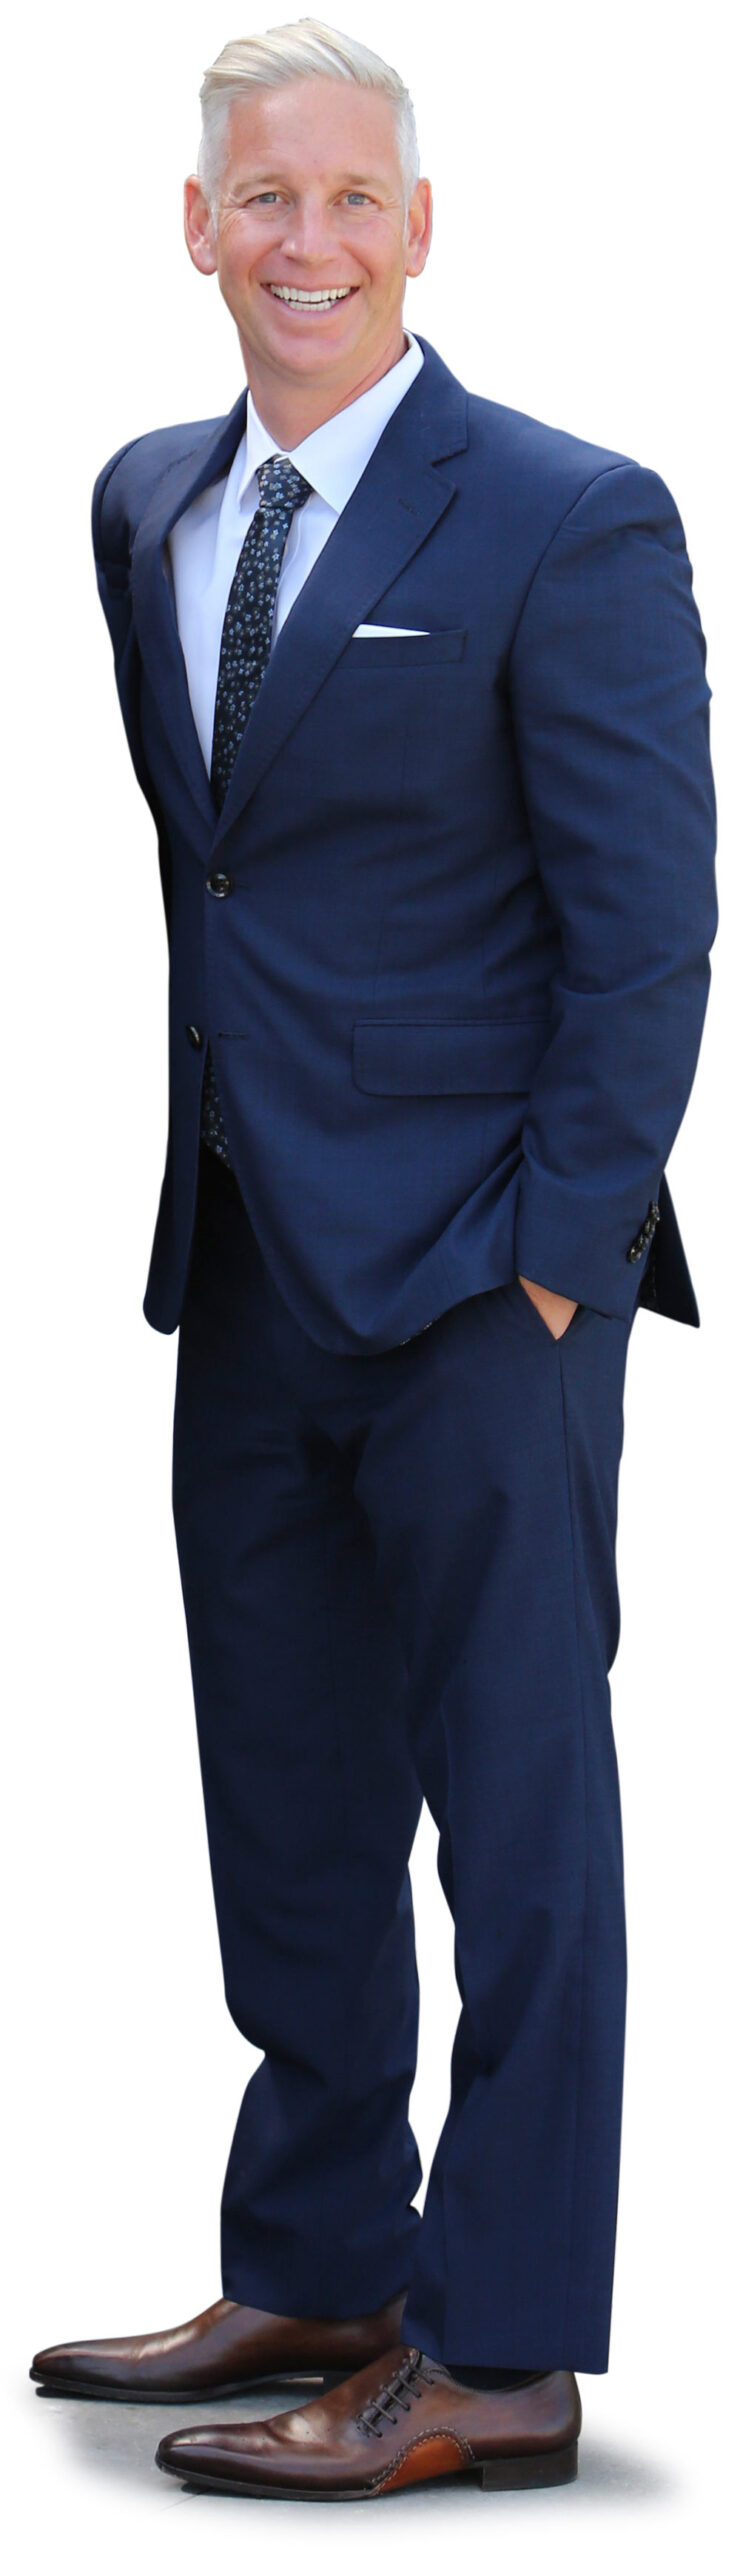 Noah Springer in navy blue suit